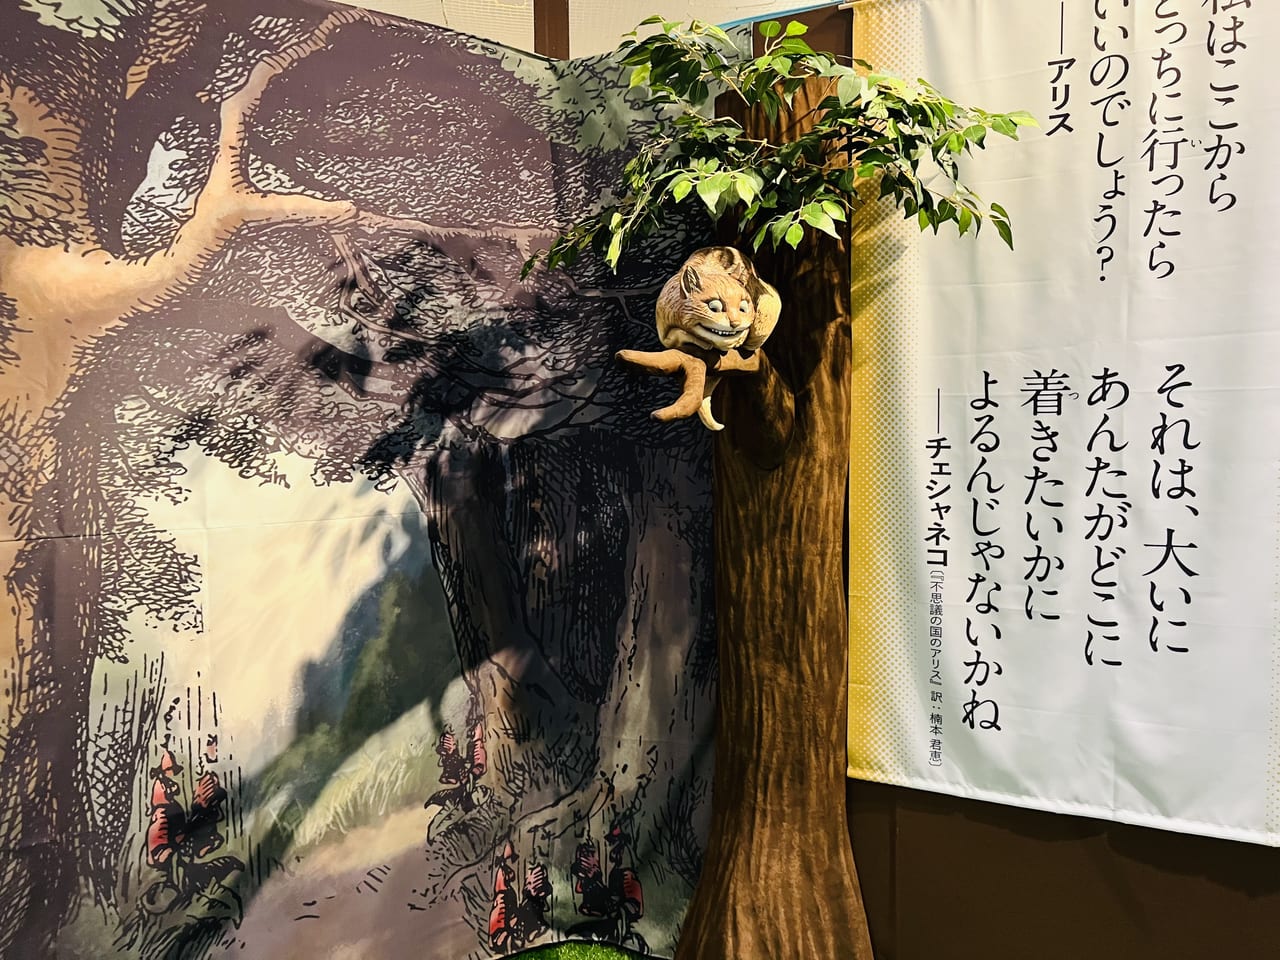 企画展「アリスの世界展―不思議な冒険の招待状―」のフォトスポット・チェシャのいる木